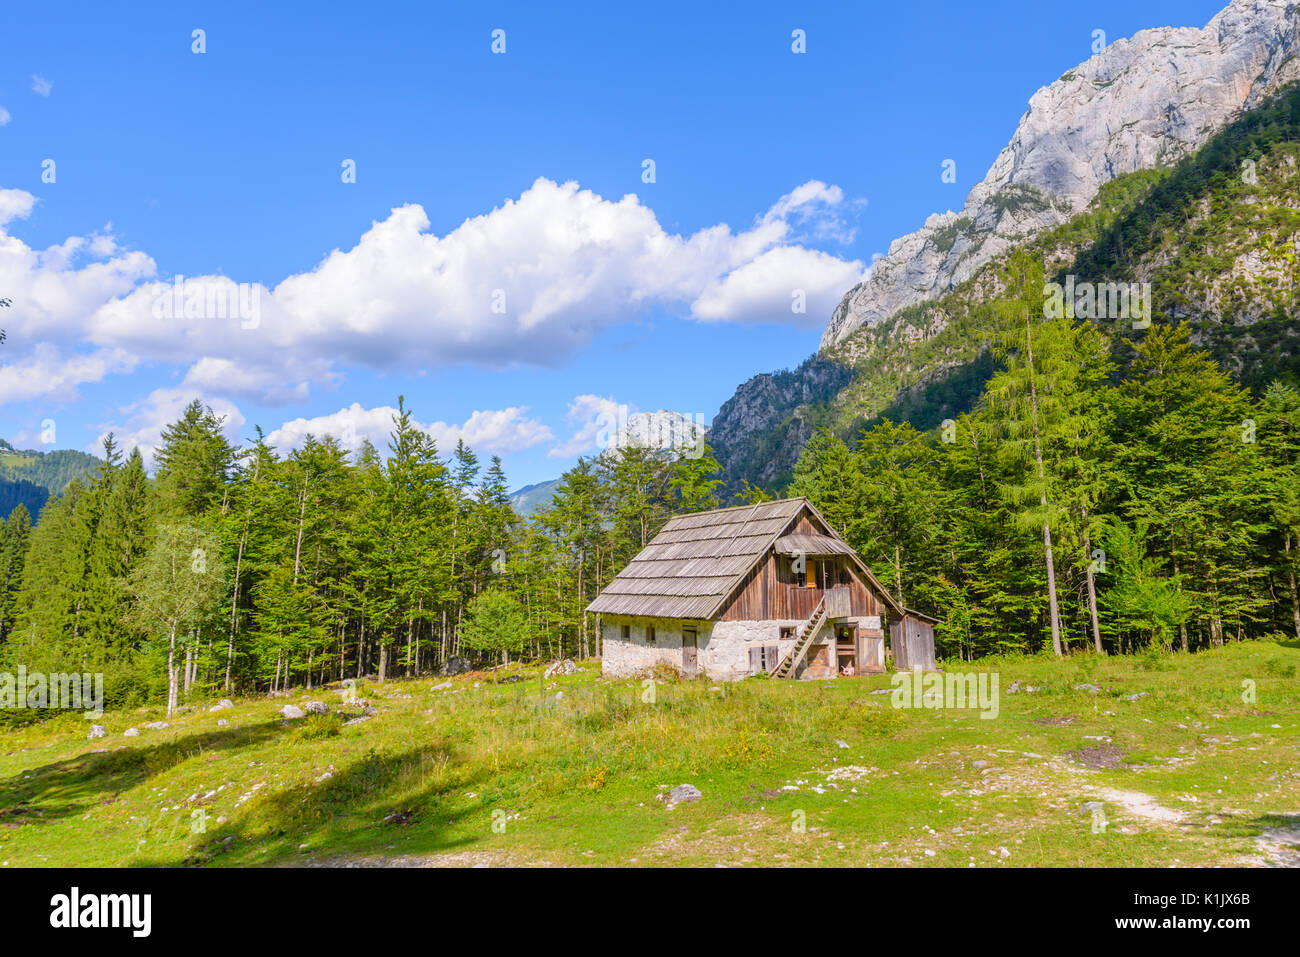 Chalet de montagne, cabane dans les Alpes, situé dans la région de robanov kot, la Slovénie, la randonnée et escalade lieu populaire avec picturescue view Banque D'Images